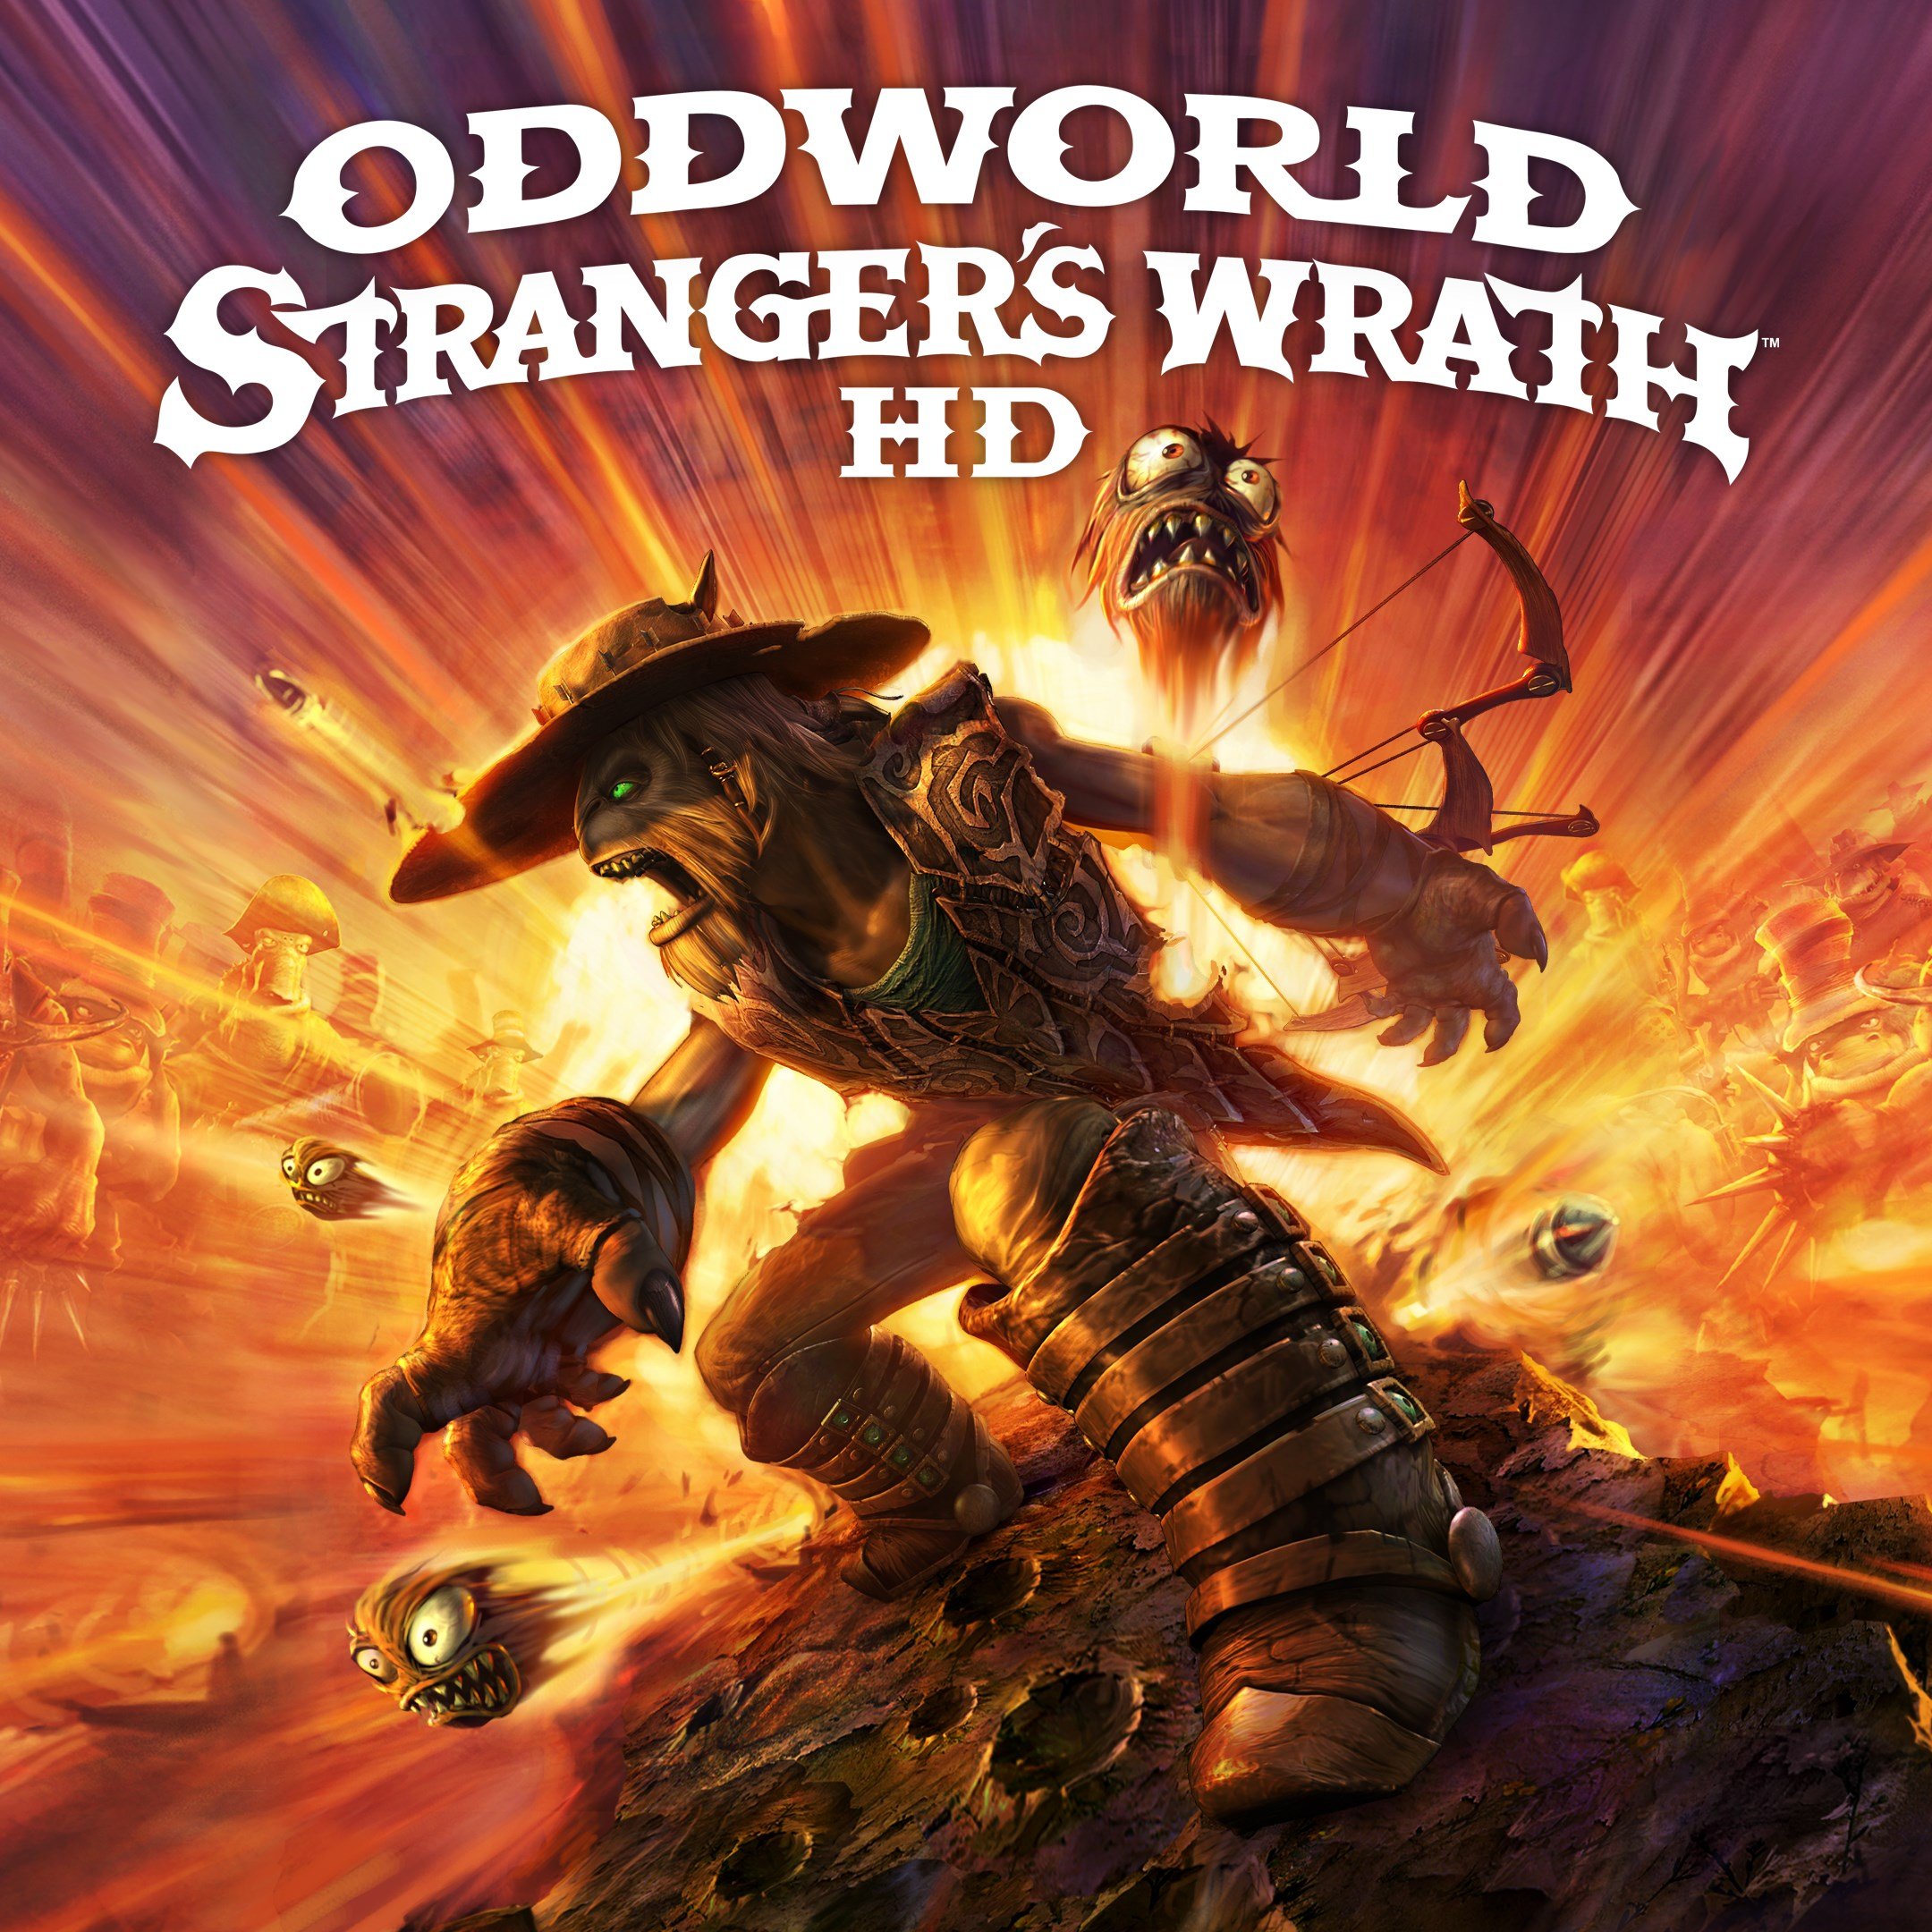 Boxart for Oddworld: Stranger's Wrath HD